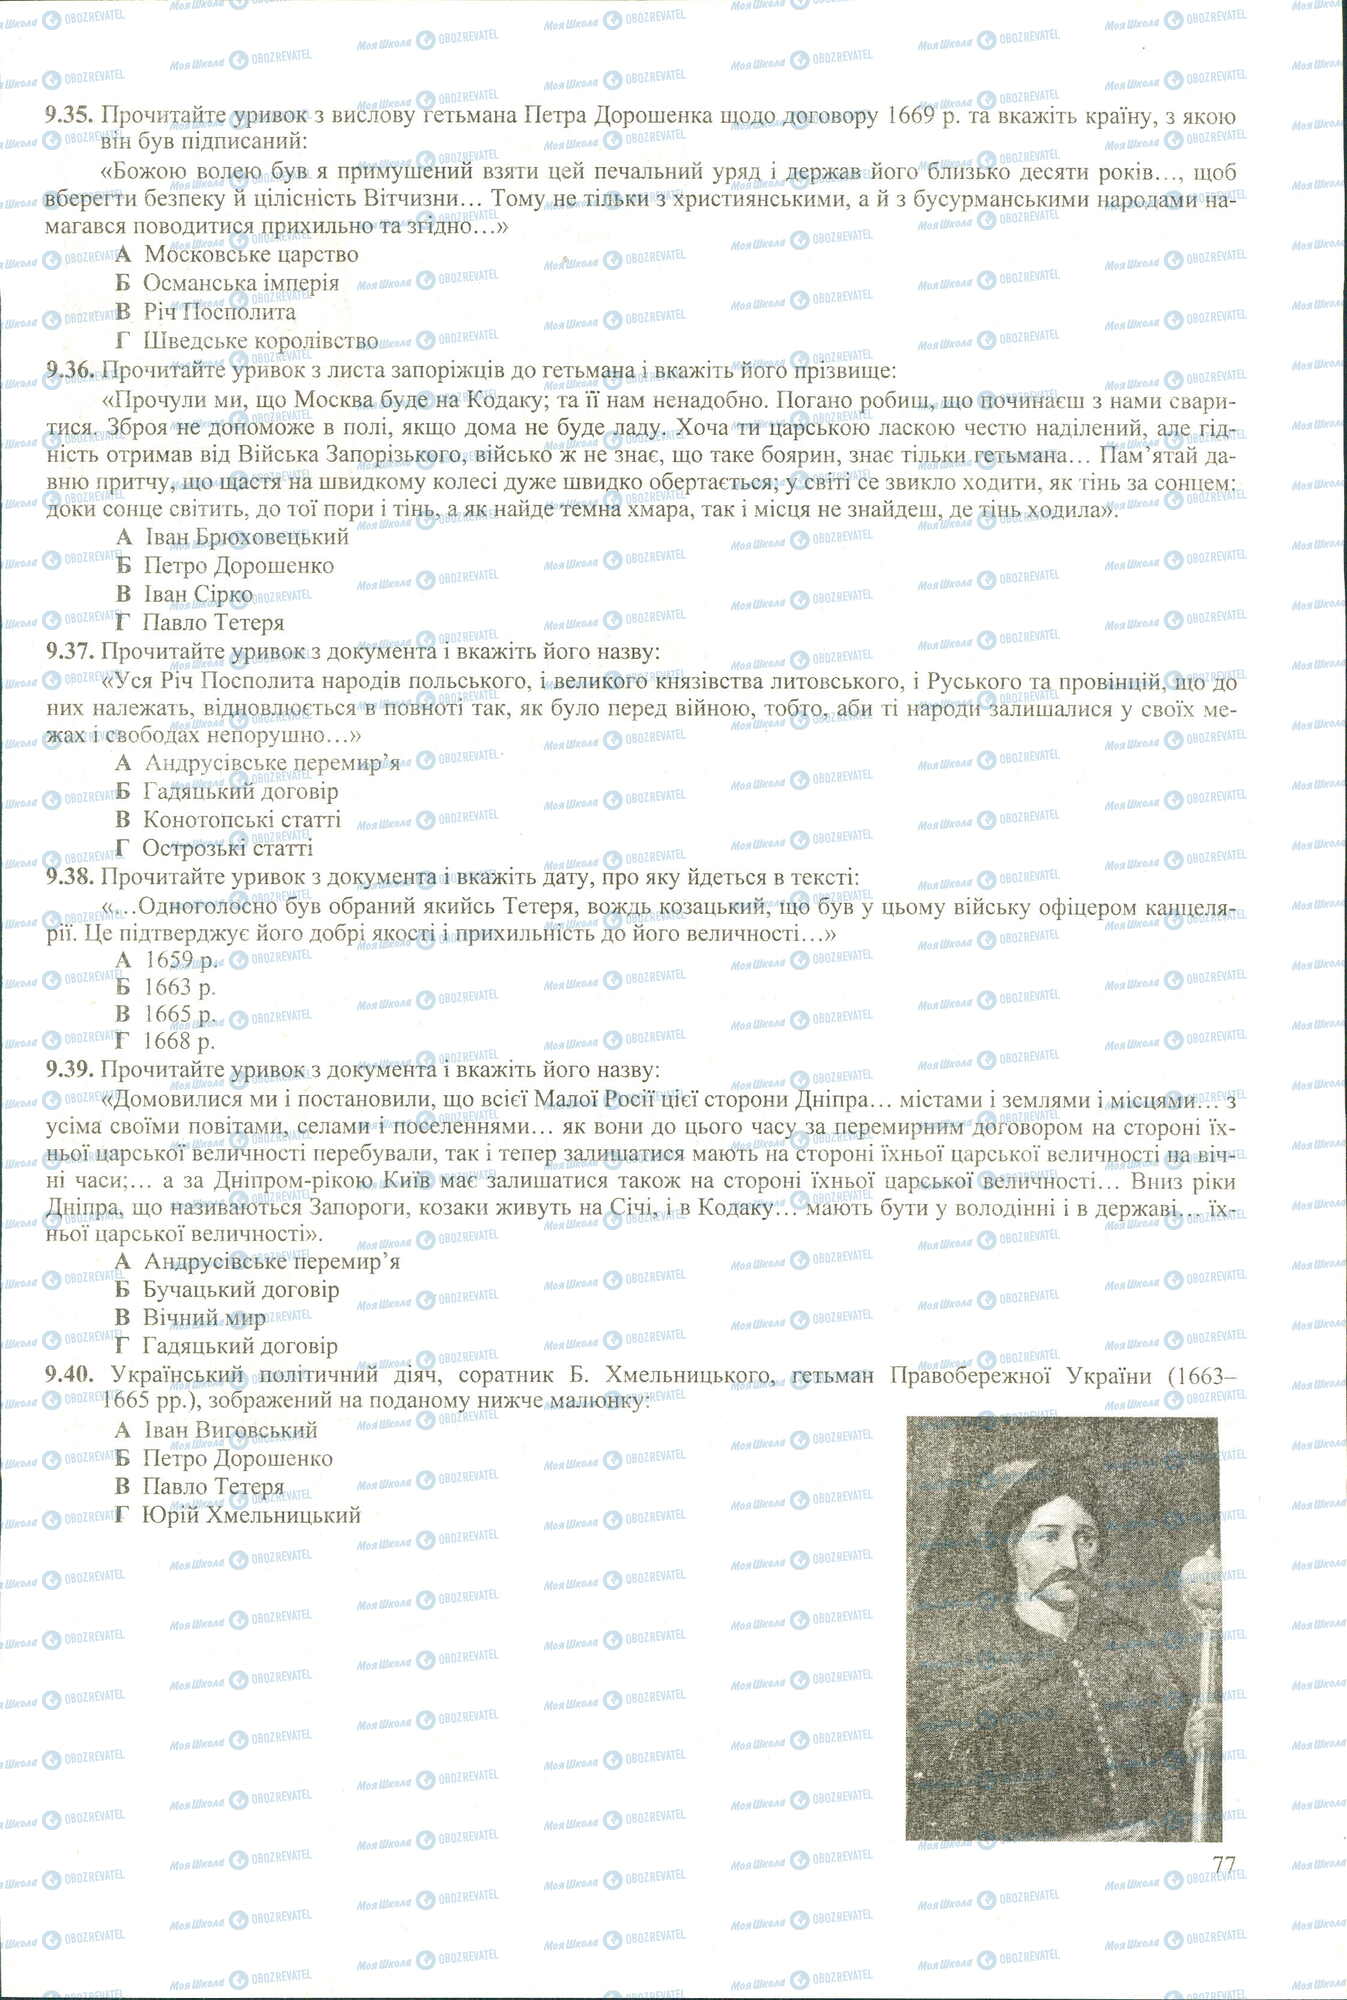 ЗНО История Украины 11 класс страница 35-40